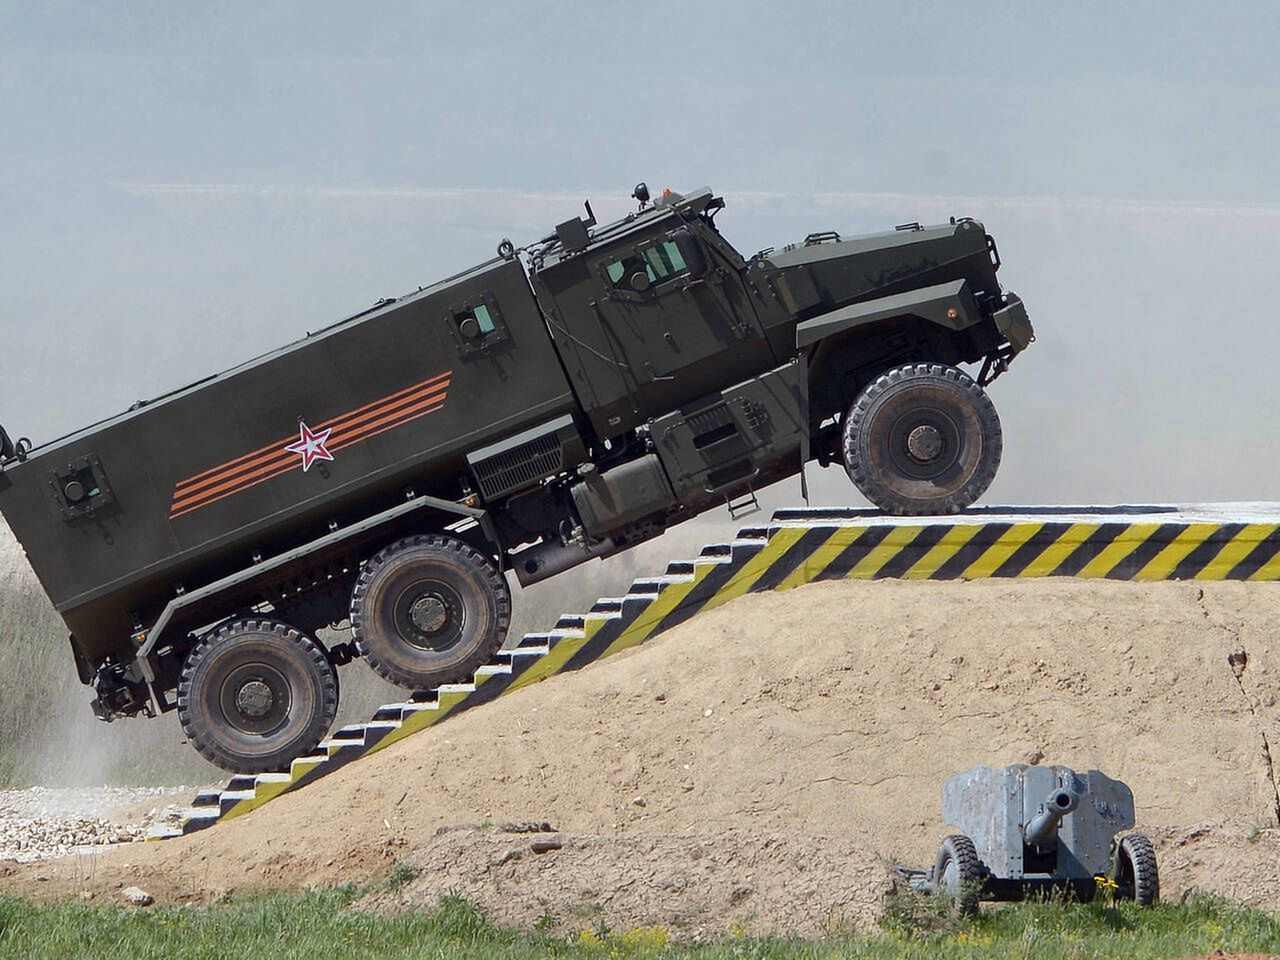 Rosjanie zbudowali pojazd dla kadyrowców?; zdjęcie ilustracyjne